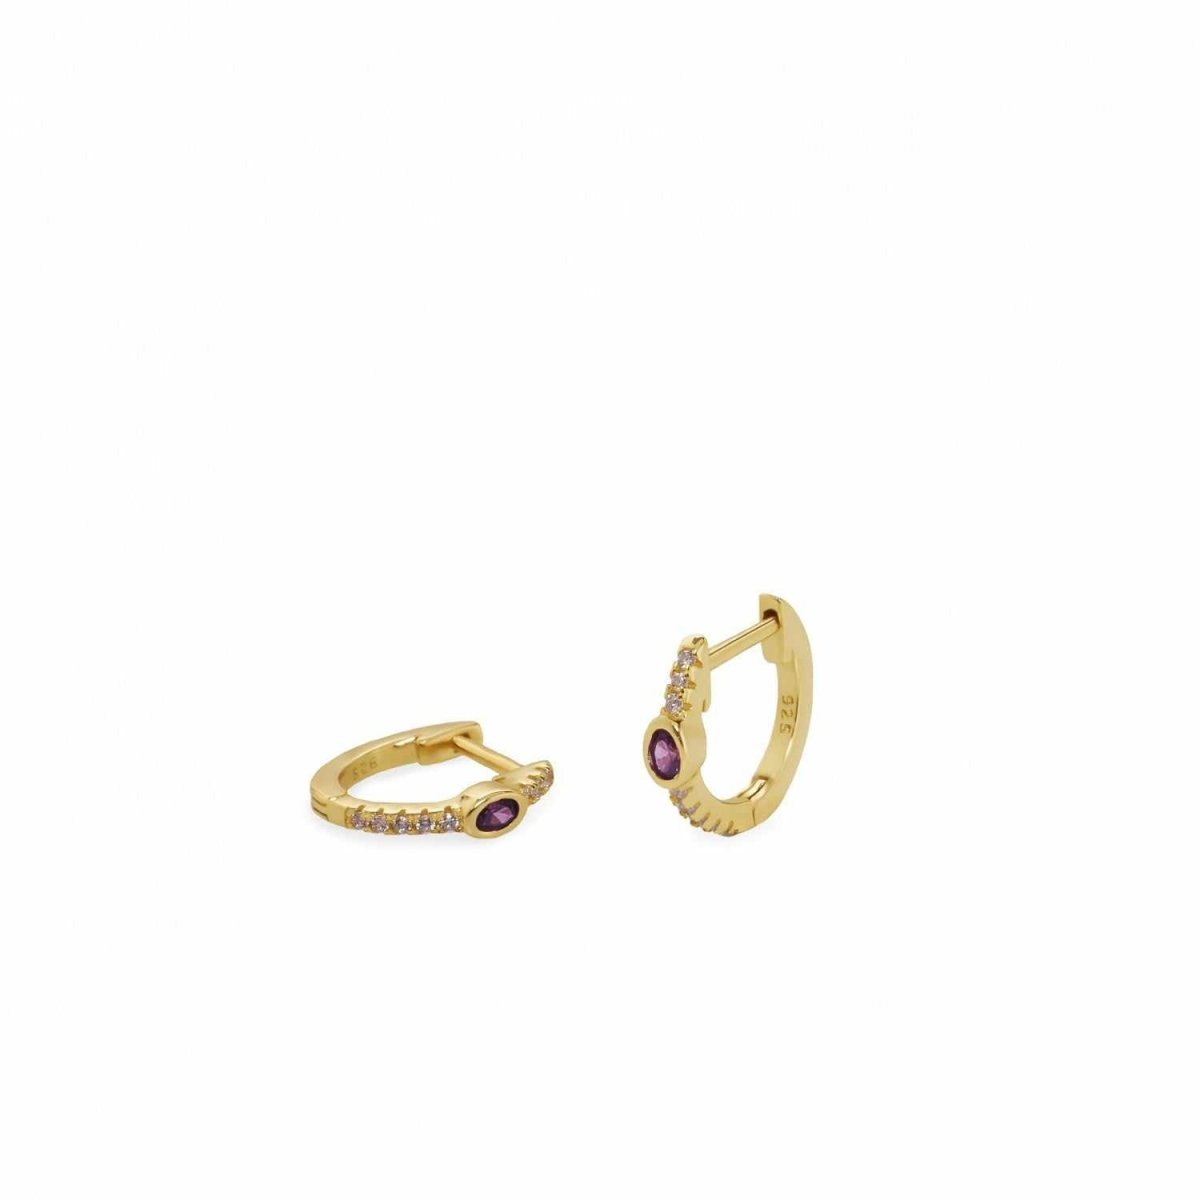 Pendiente · Pendientes aros pequeños bañados en oro talla ovalada con circonitas